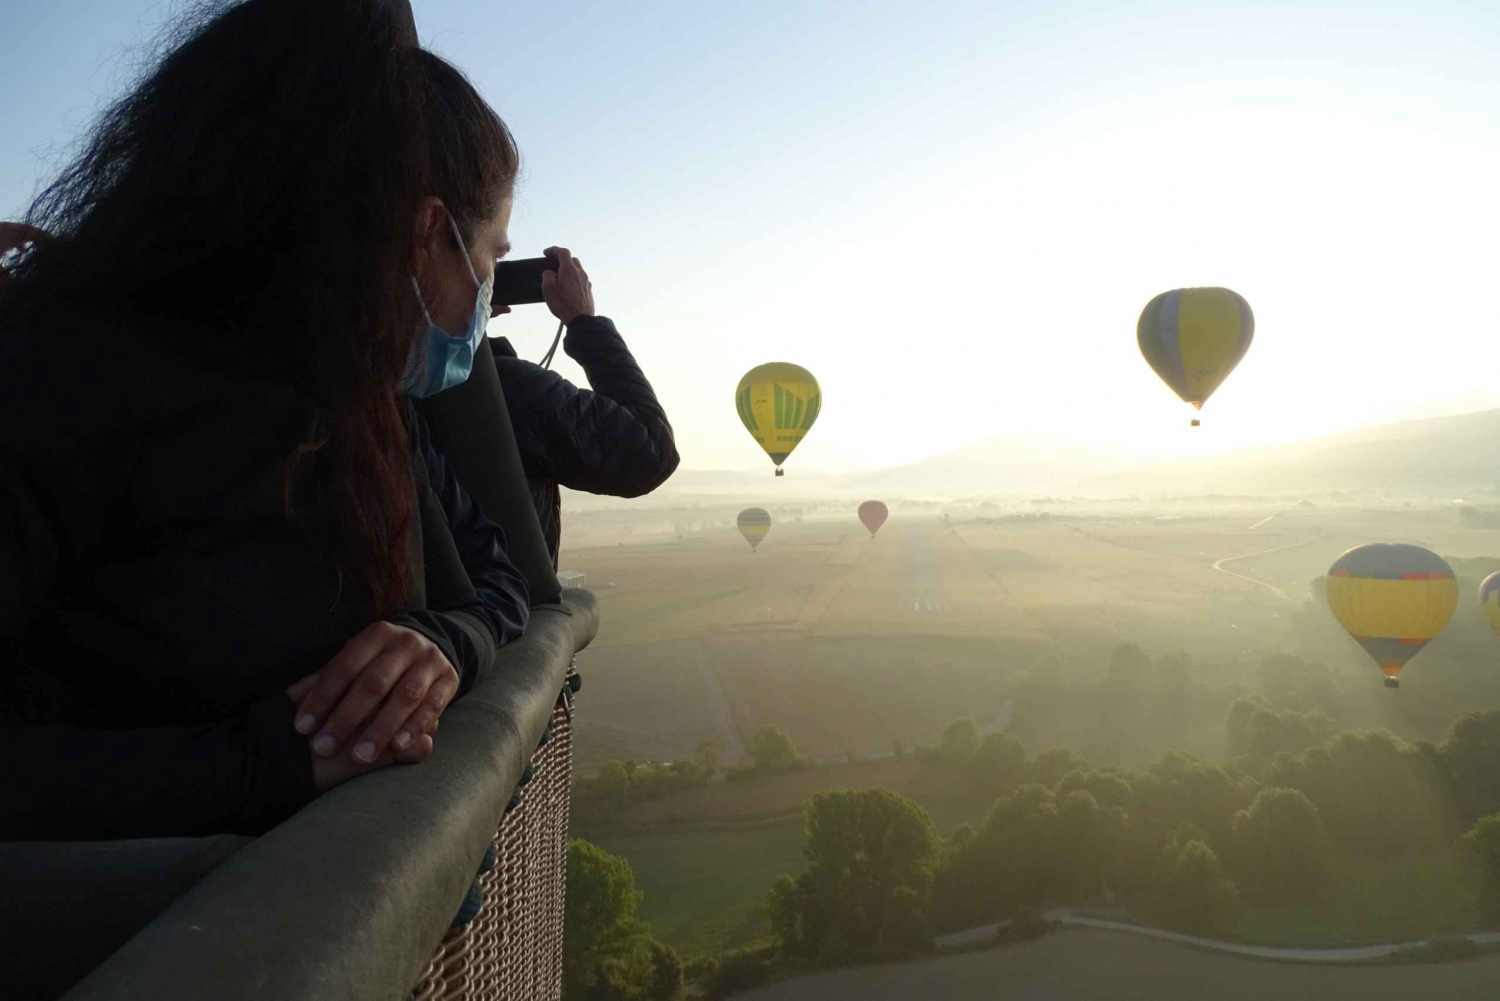 Take-a-hot-air-balloon-ride-over-the-Costa-Brava